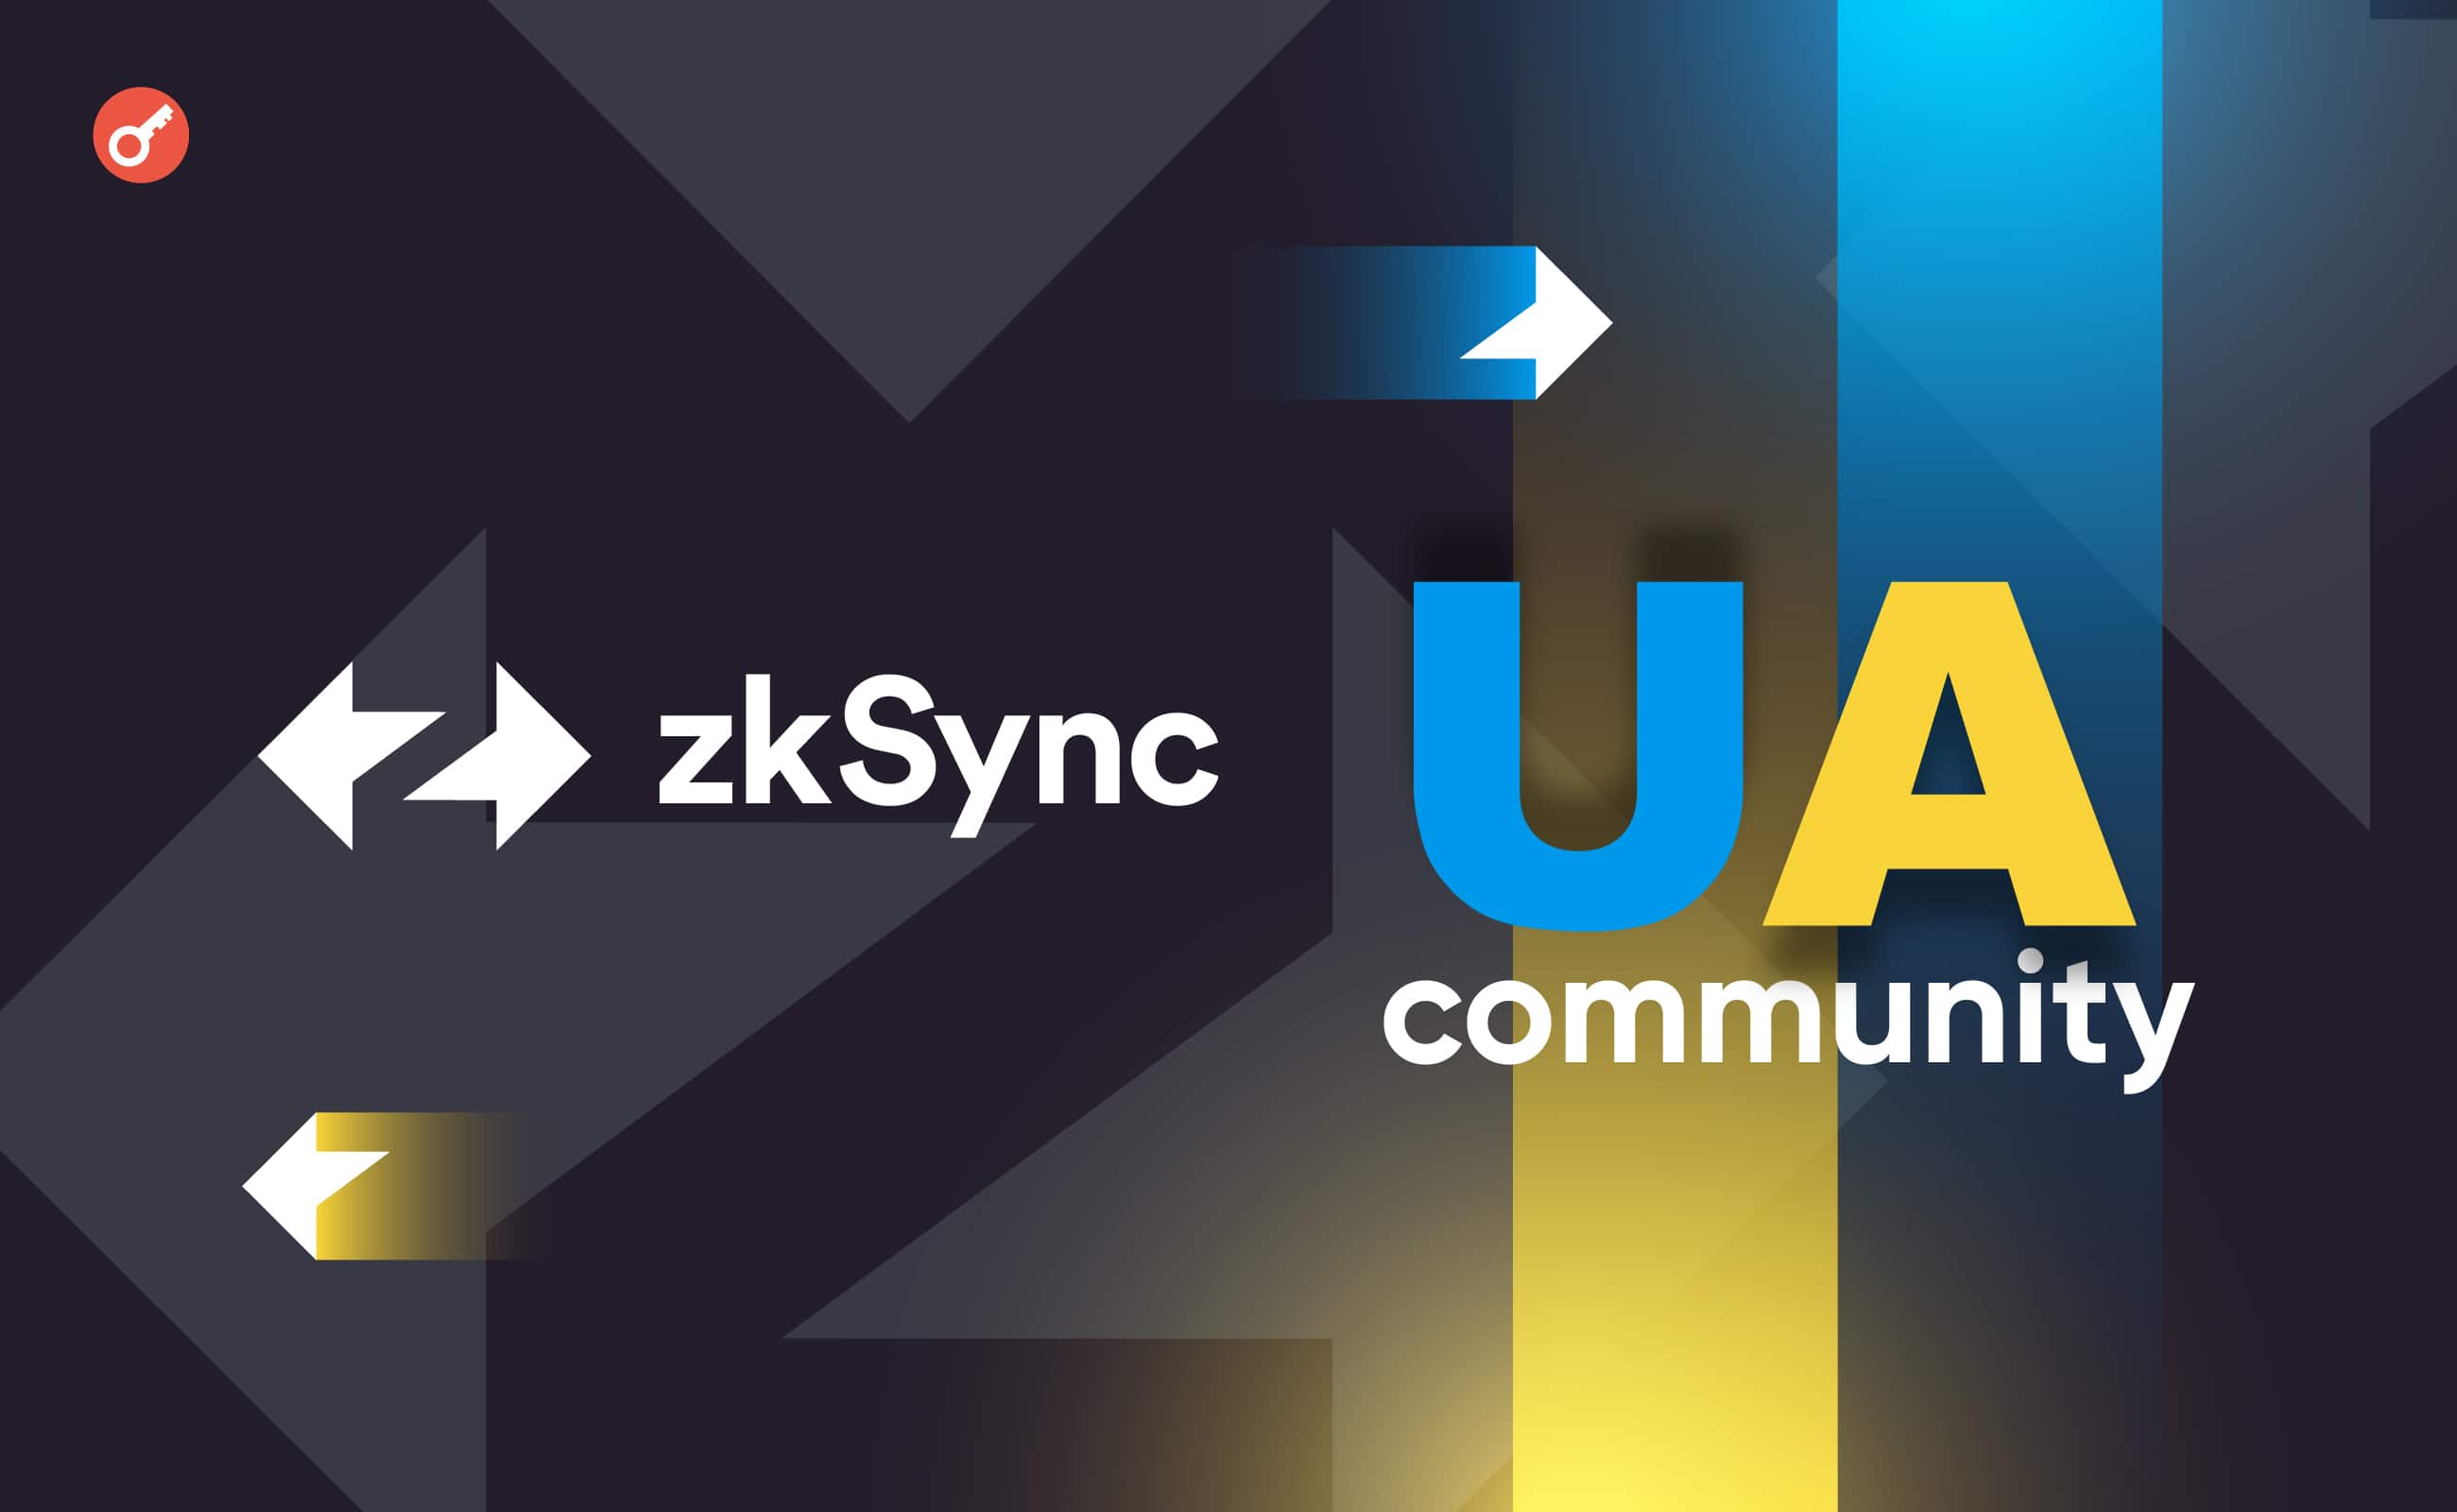 Команда zkSync проведет митап для украинского комьюнити в Варшаве. Заглавный коллаж новости.